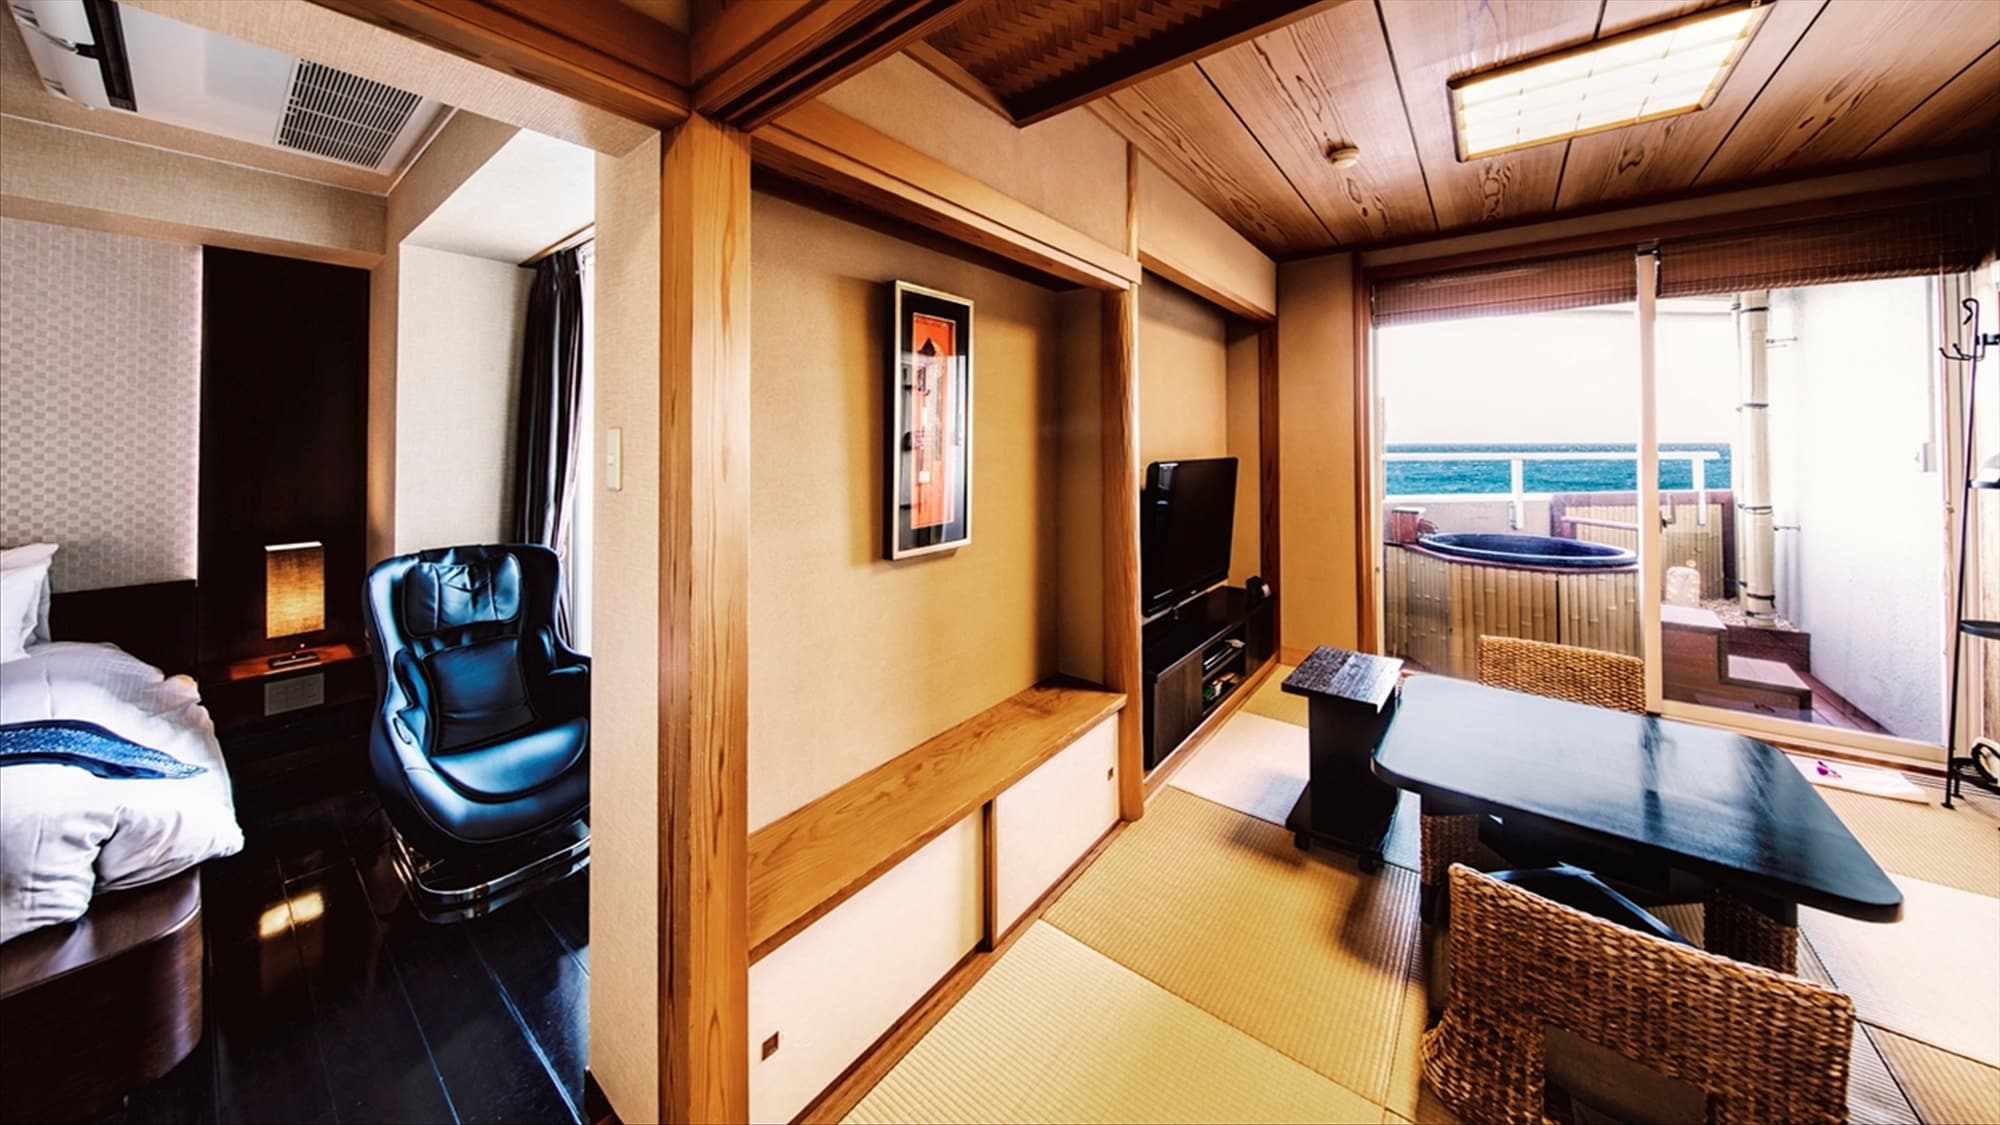 [Hollywood Twin 日西式房間2] 備有亞洲現代風格臥室和琉球榻榻米日式房間的人氣客房。